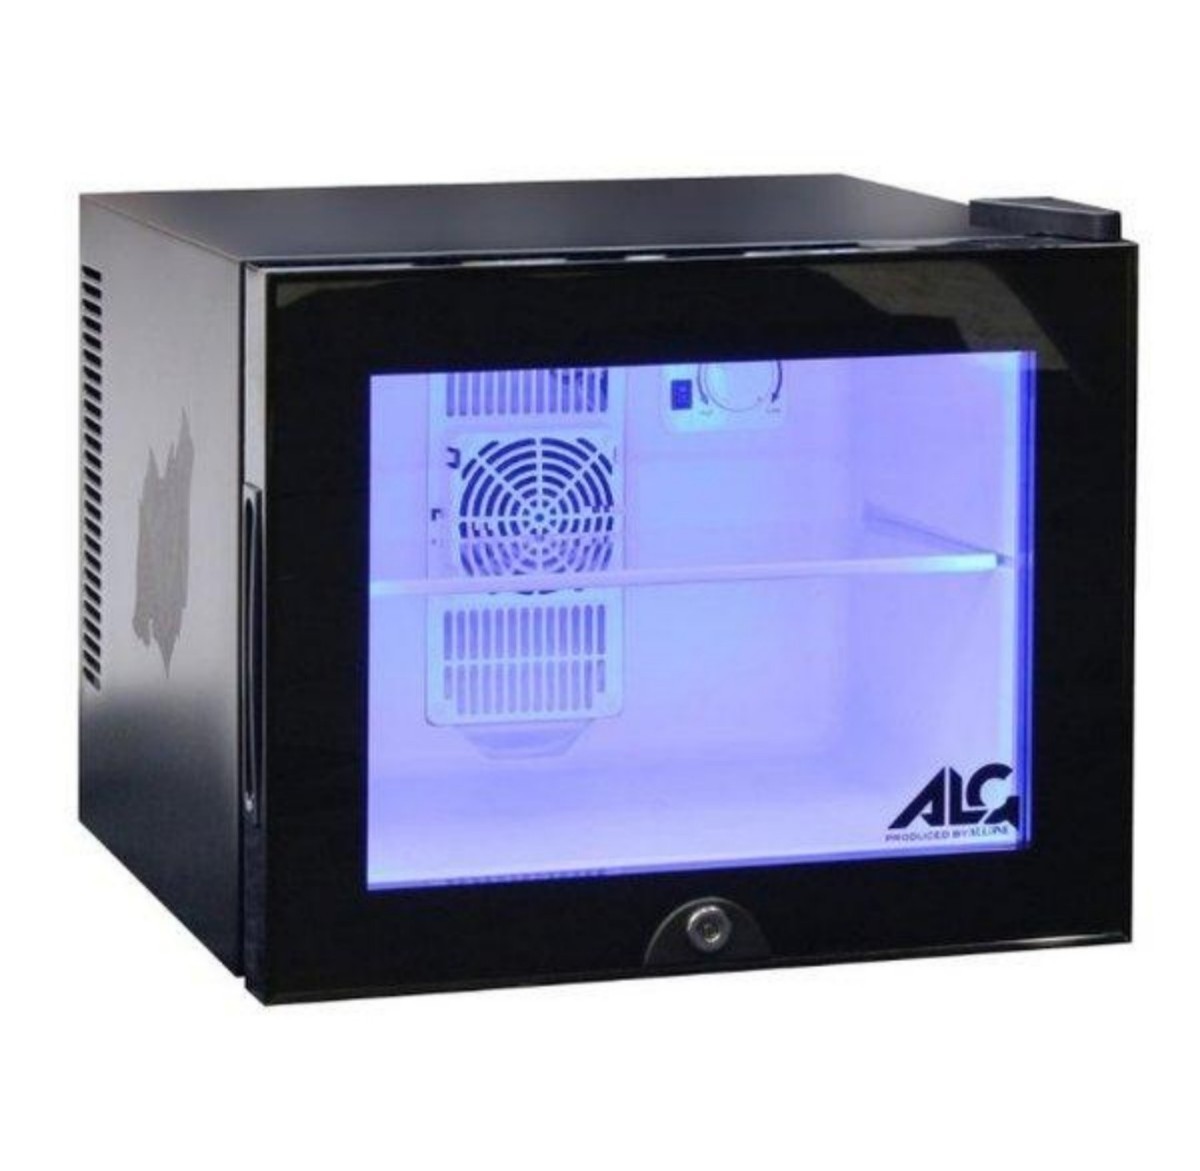 LED内蔵ミニゲーミング冷蔵庫20L ALG-GMMFL LED コンパクト ブラック クリア ドア 透明 扉 ゲーミング冷蔵庫